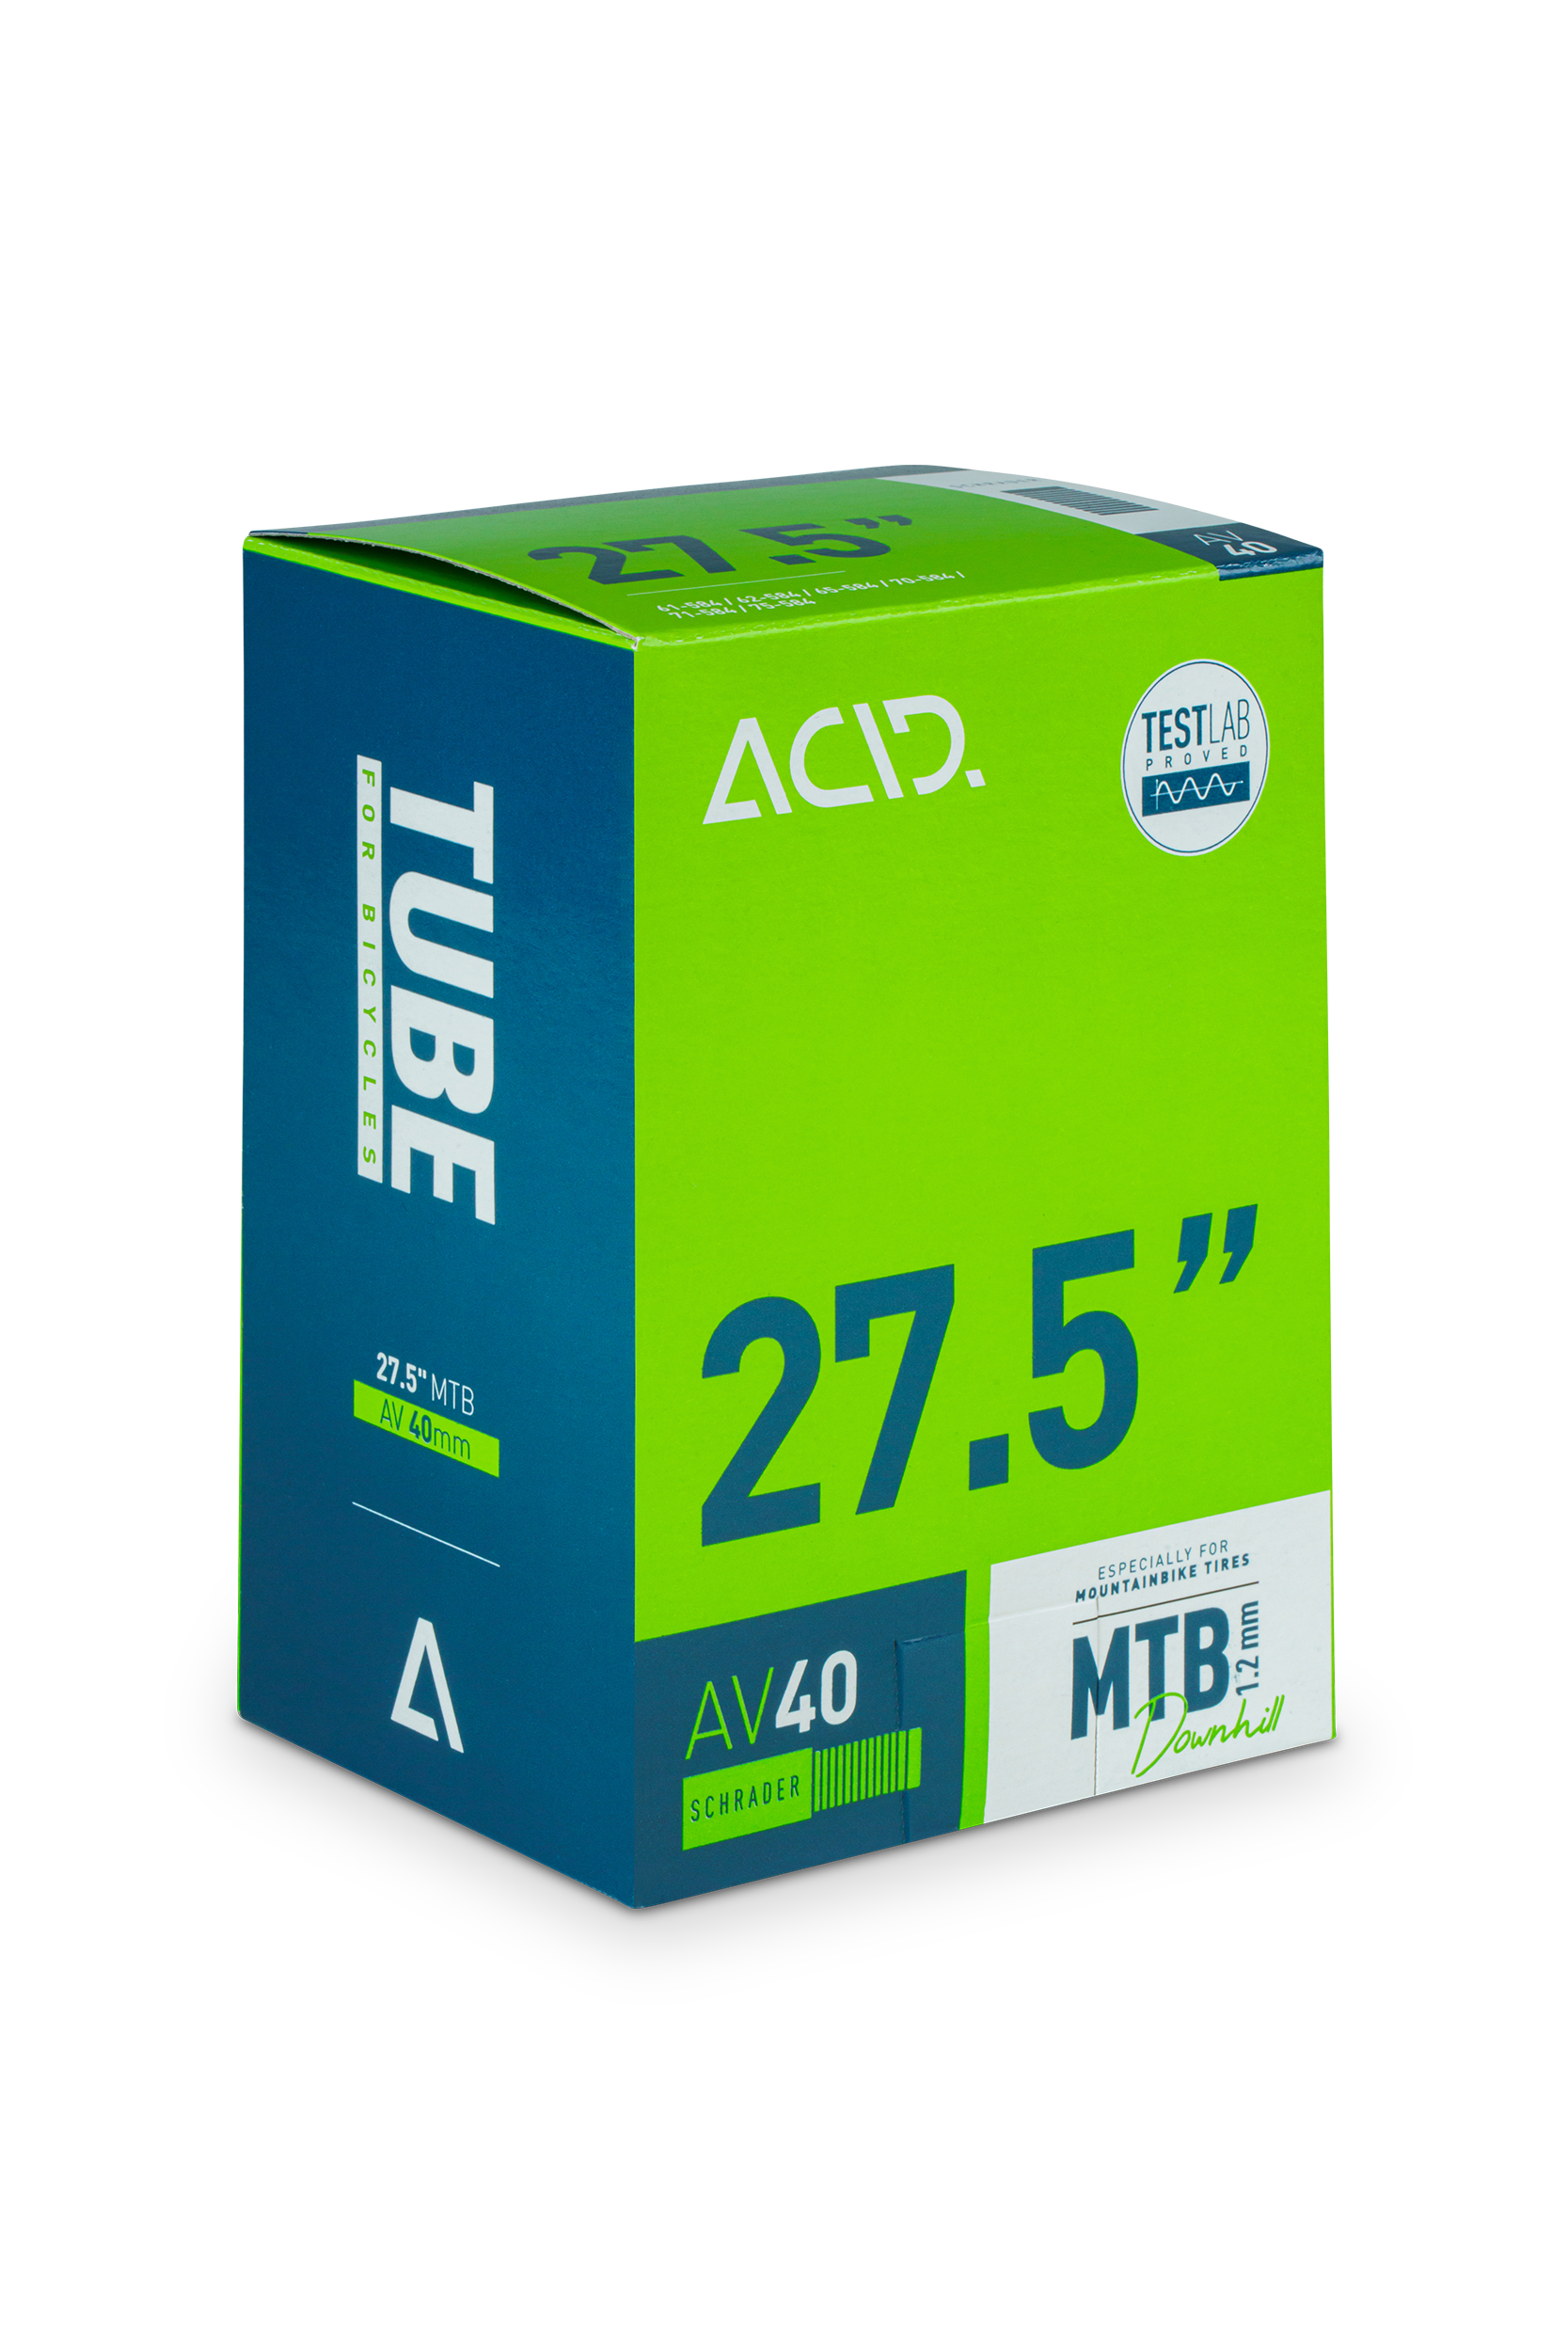 ACID Tube 27,5" MTB Downhill AV 40mm